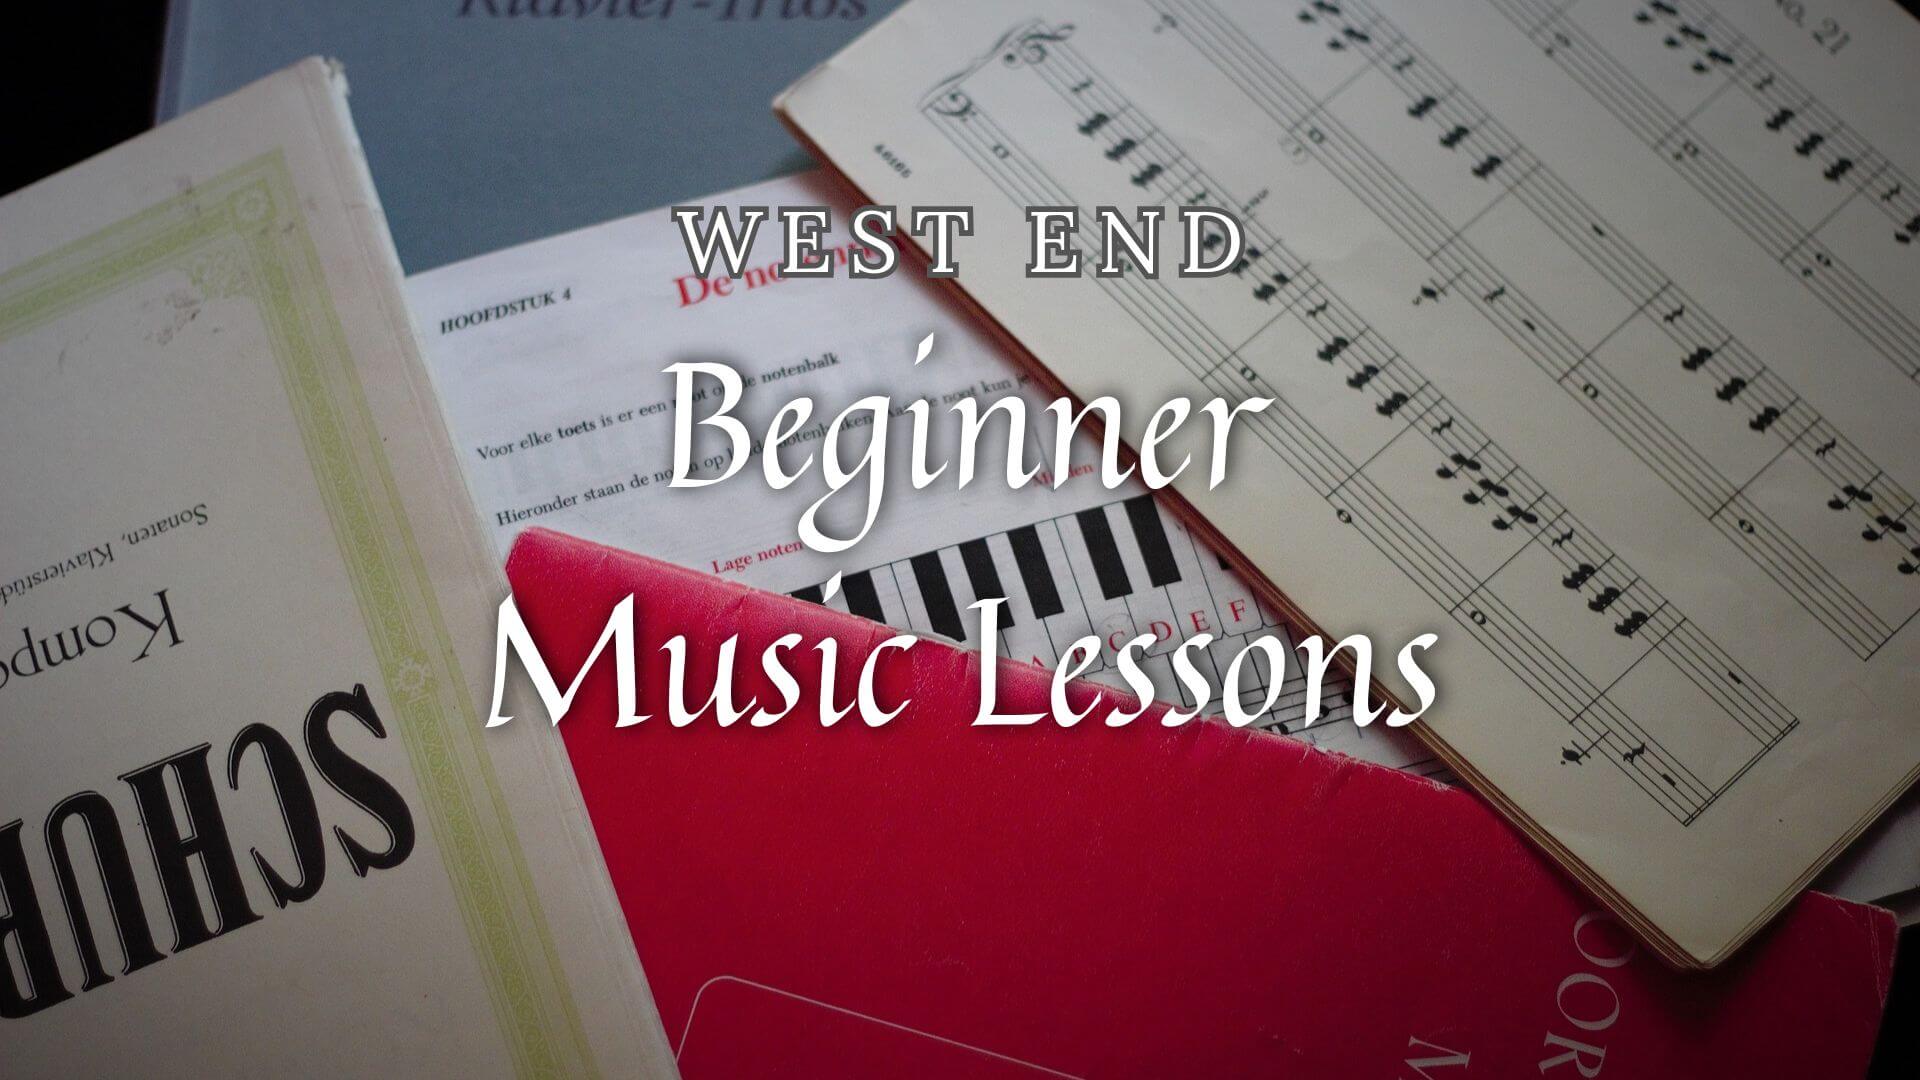 Beginner-Friendly Music Classes in West End, Massachusetts